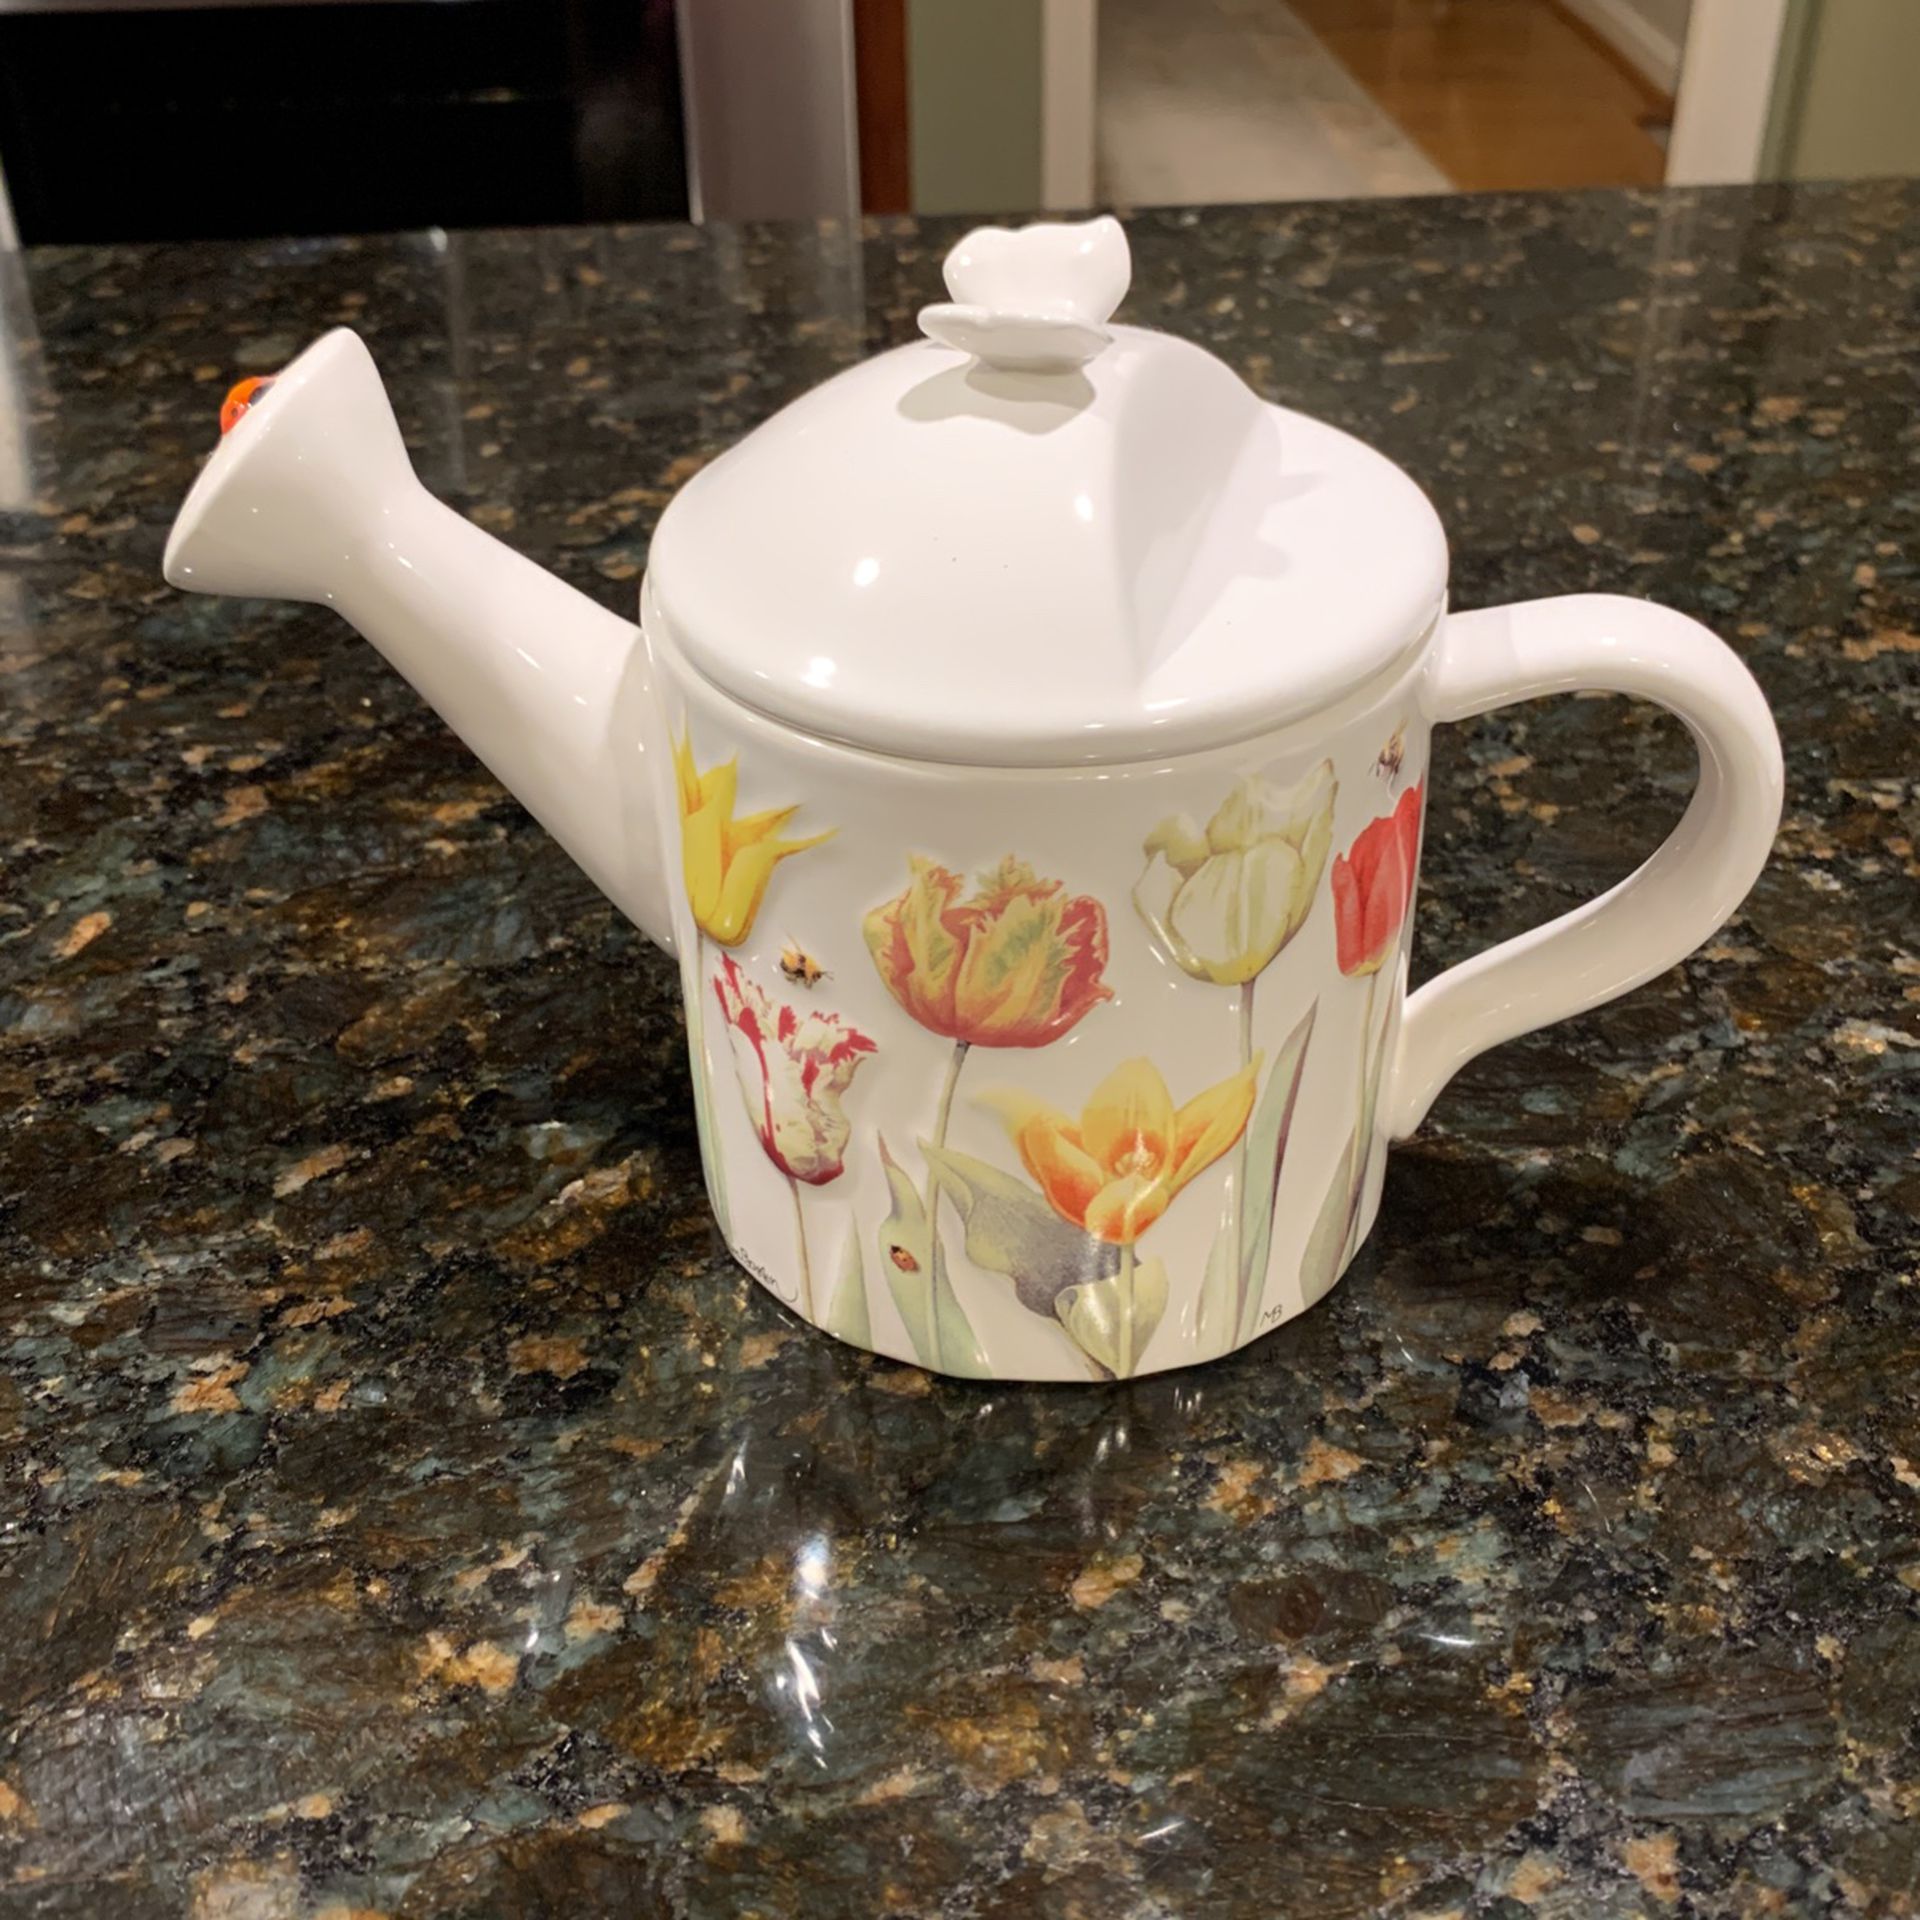 REDUCED 20%! Beautiful Springtime Teapot!